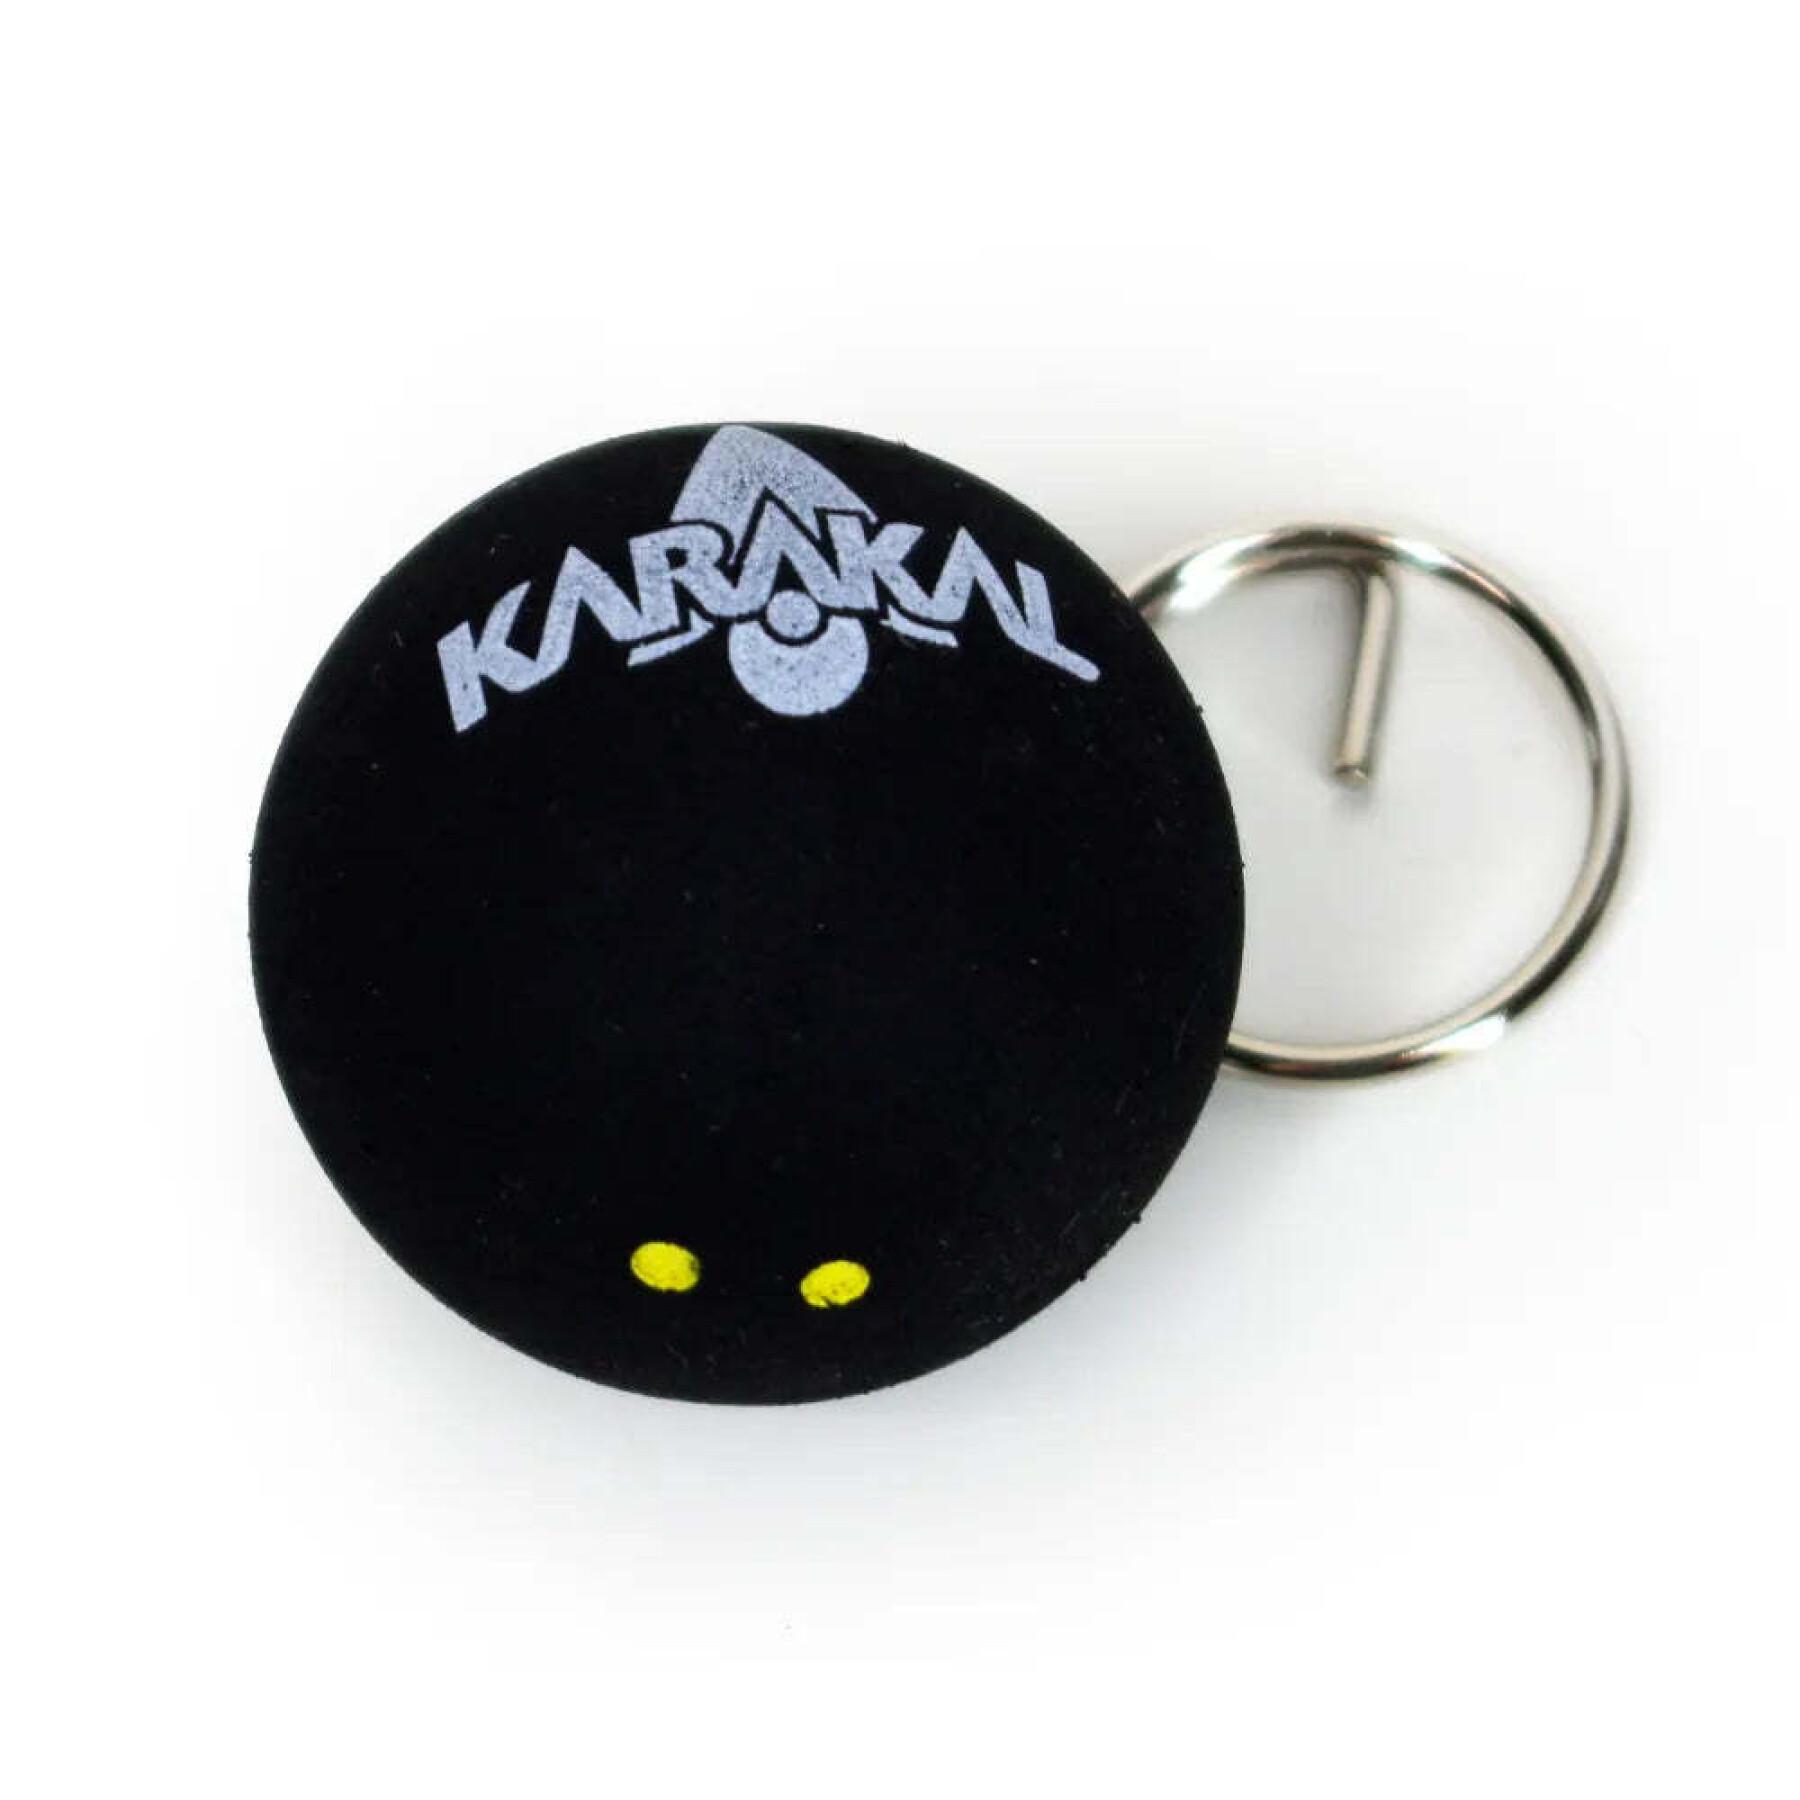 Squash ball keychain Karakal